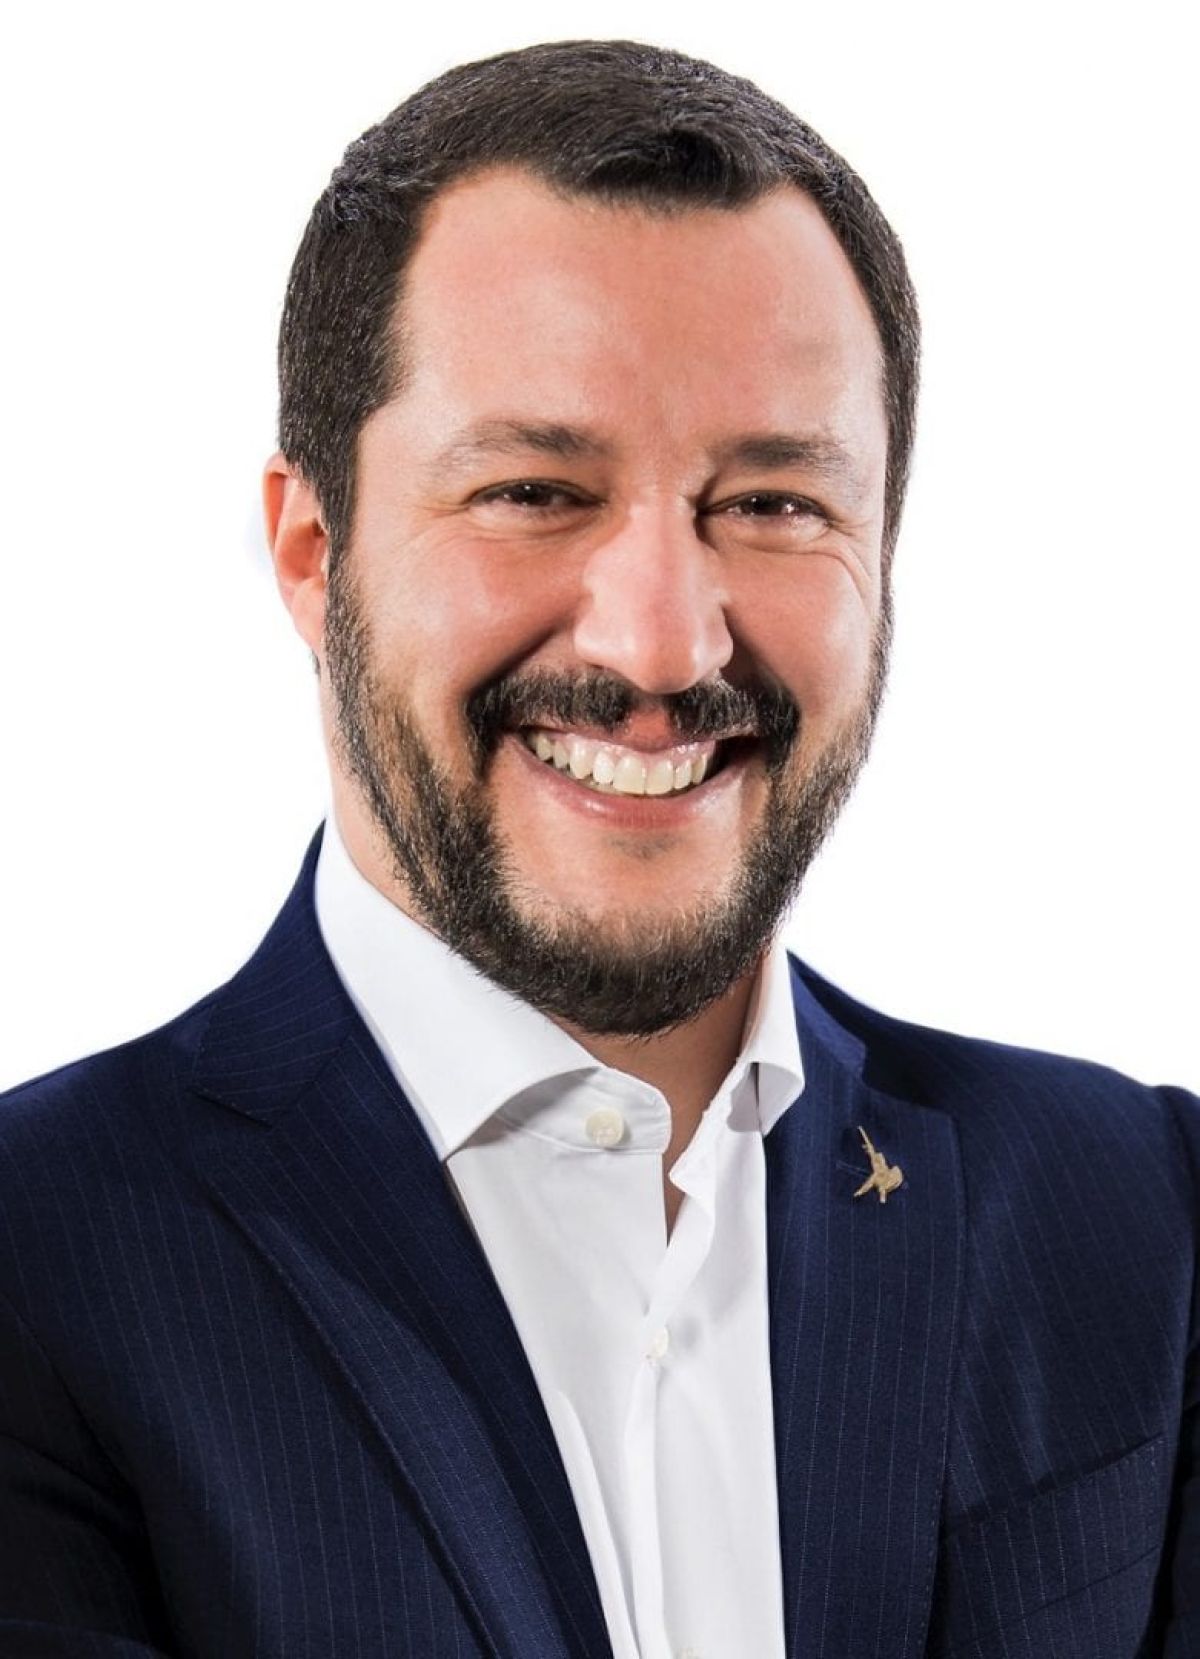 Meet Matteo Salvini: Italy’s new kingmaker